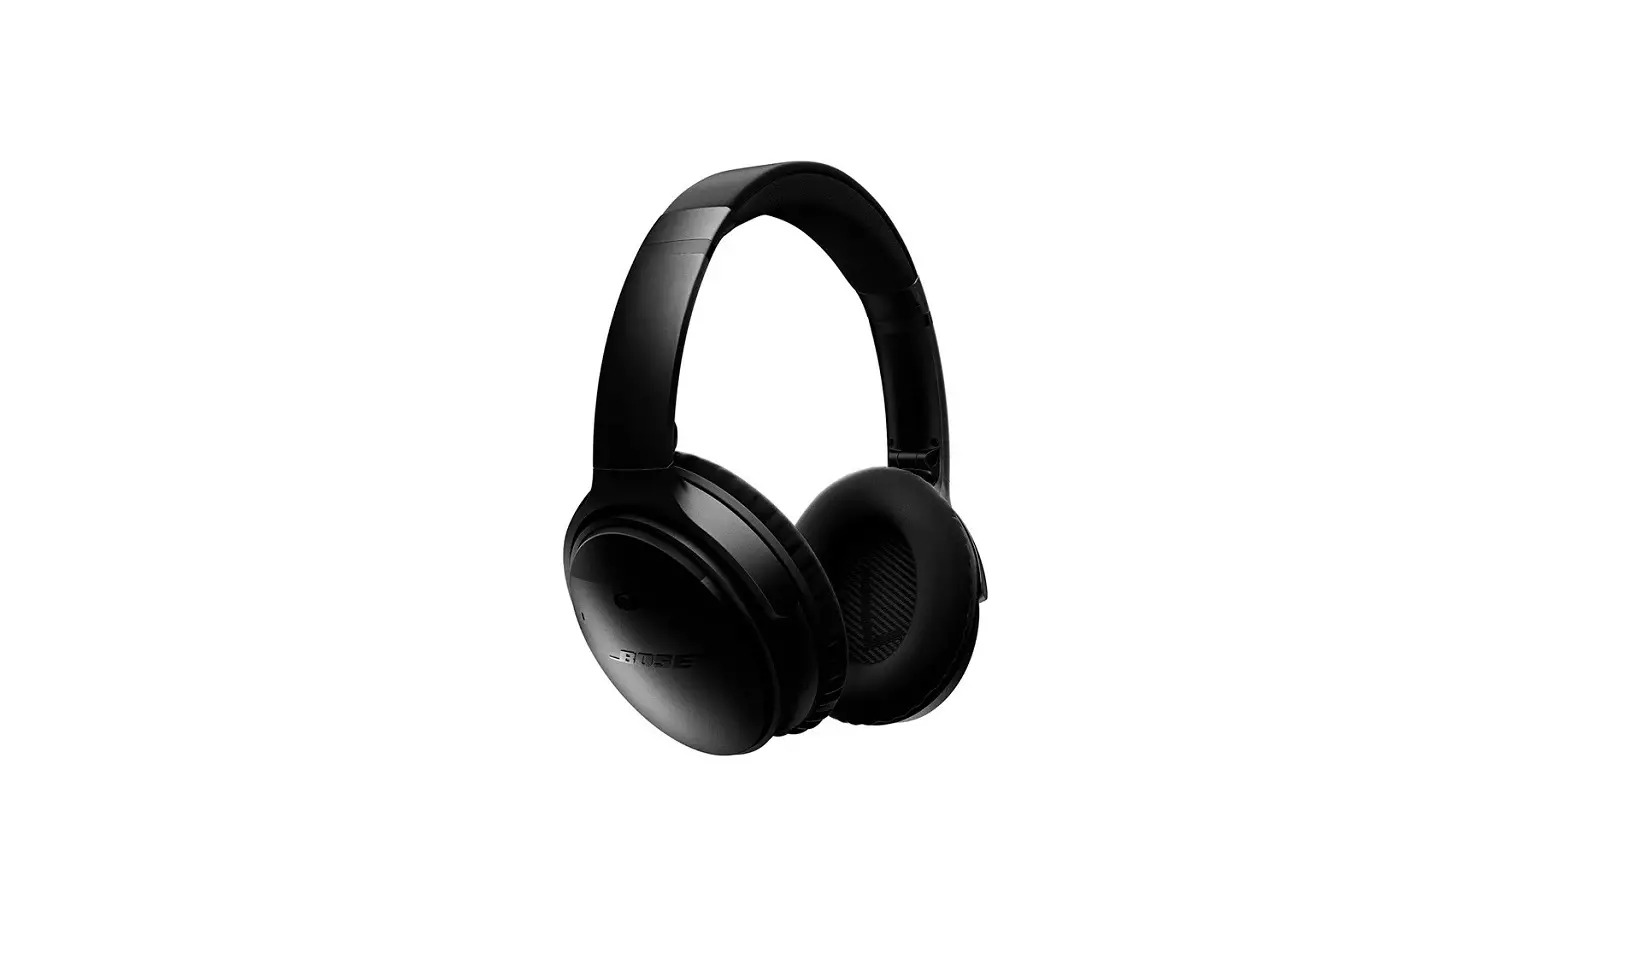 Quietcomfort 35 II Noise Cancelling Headphones